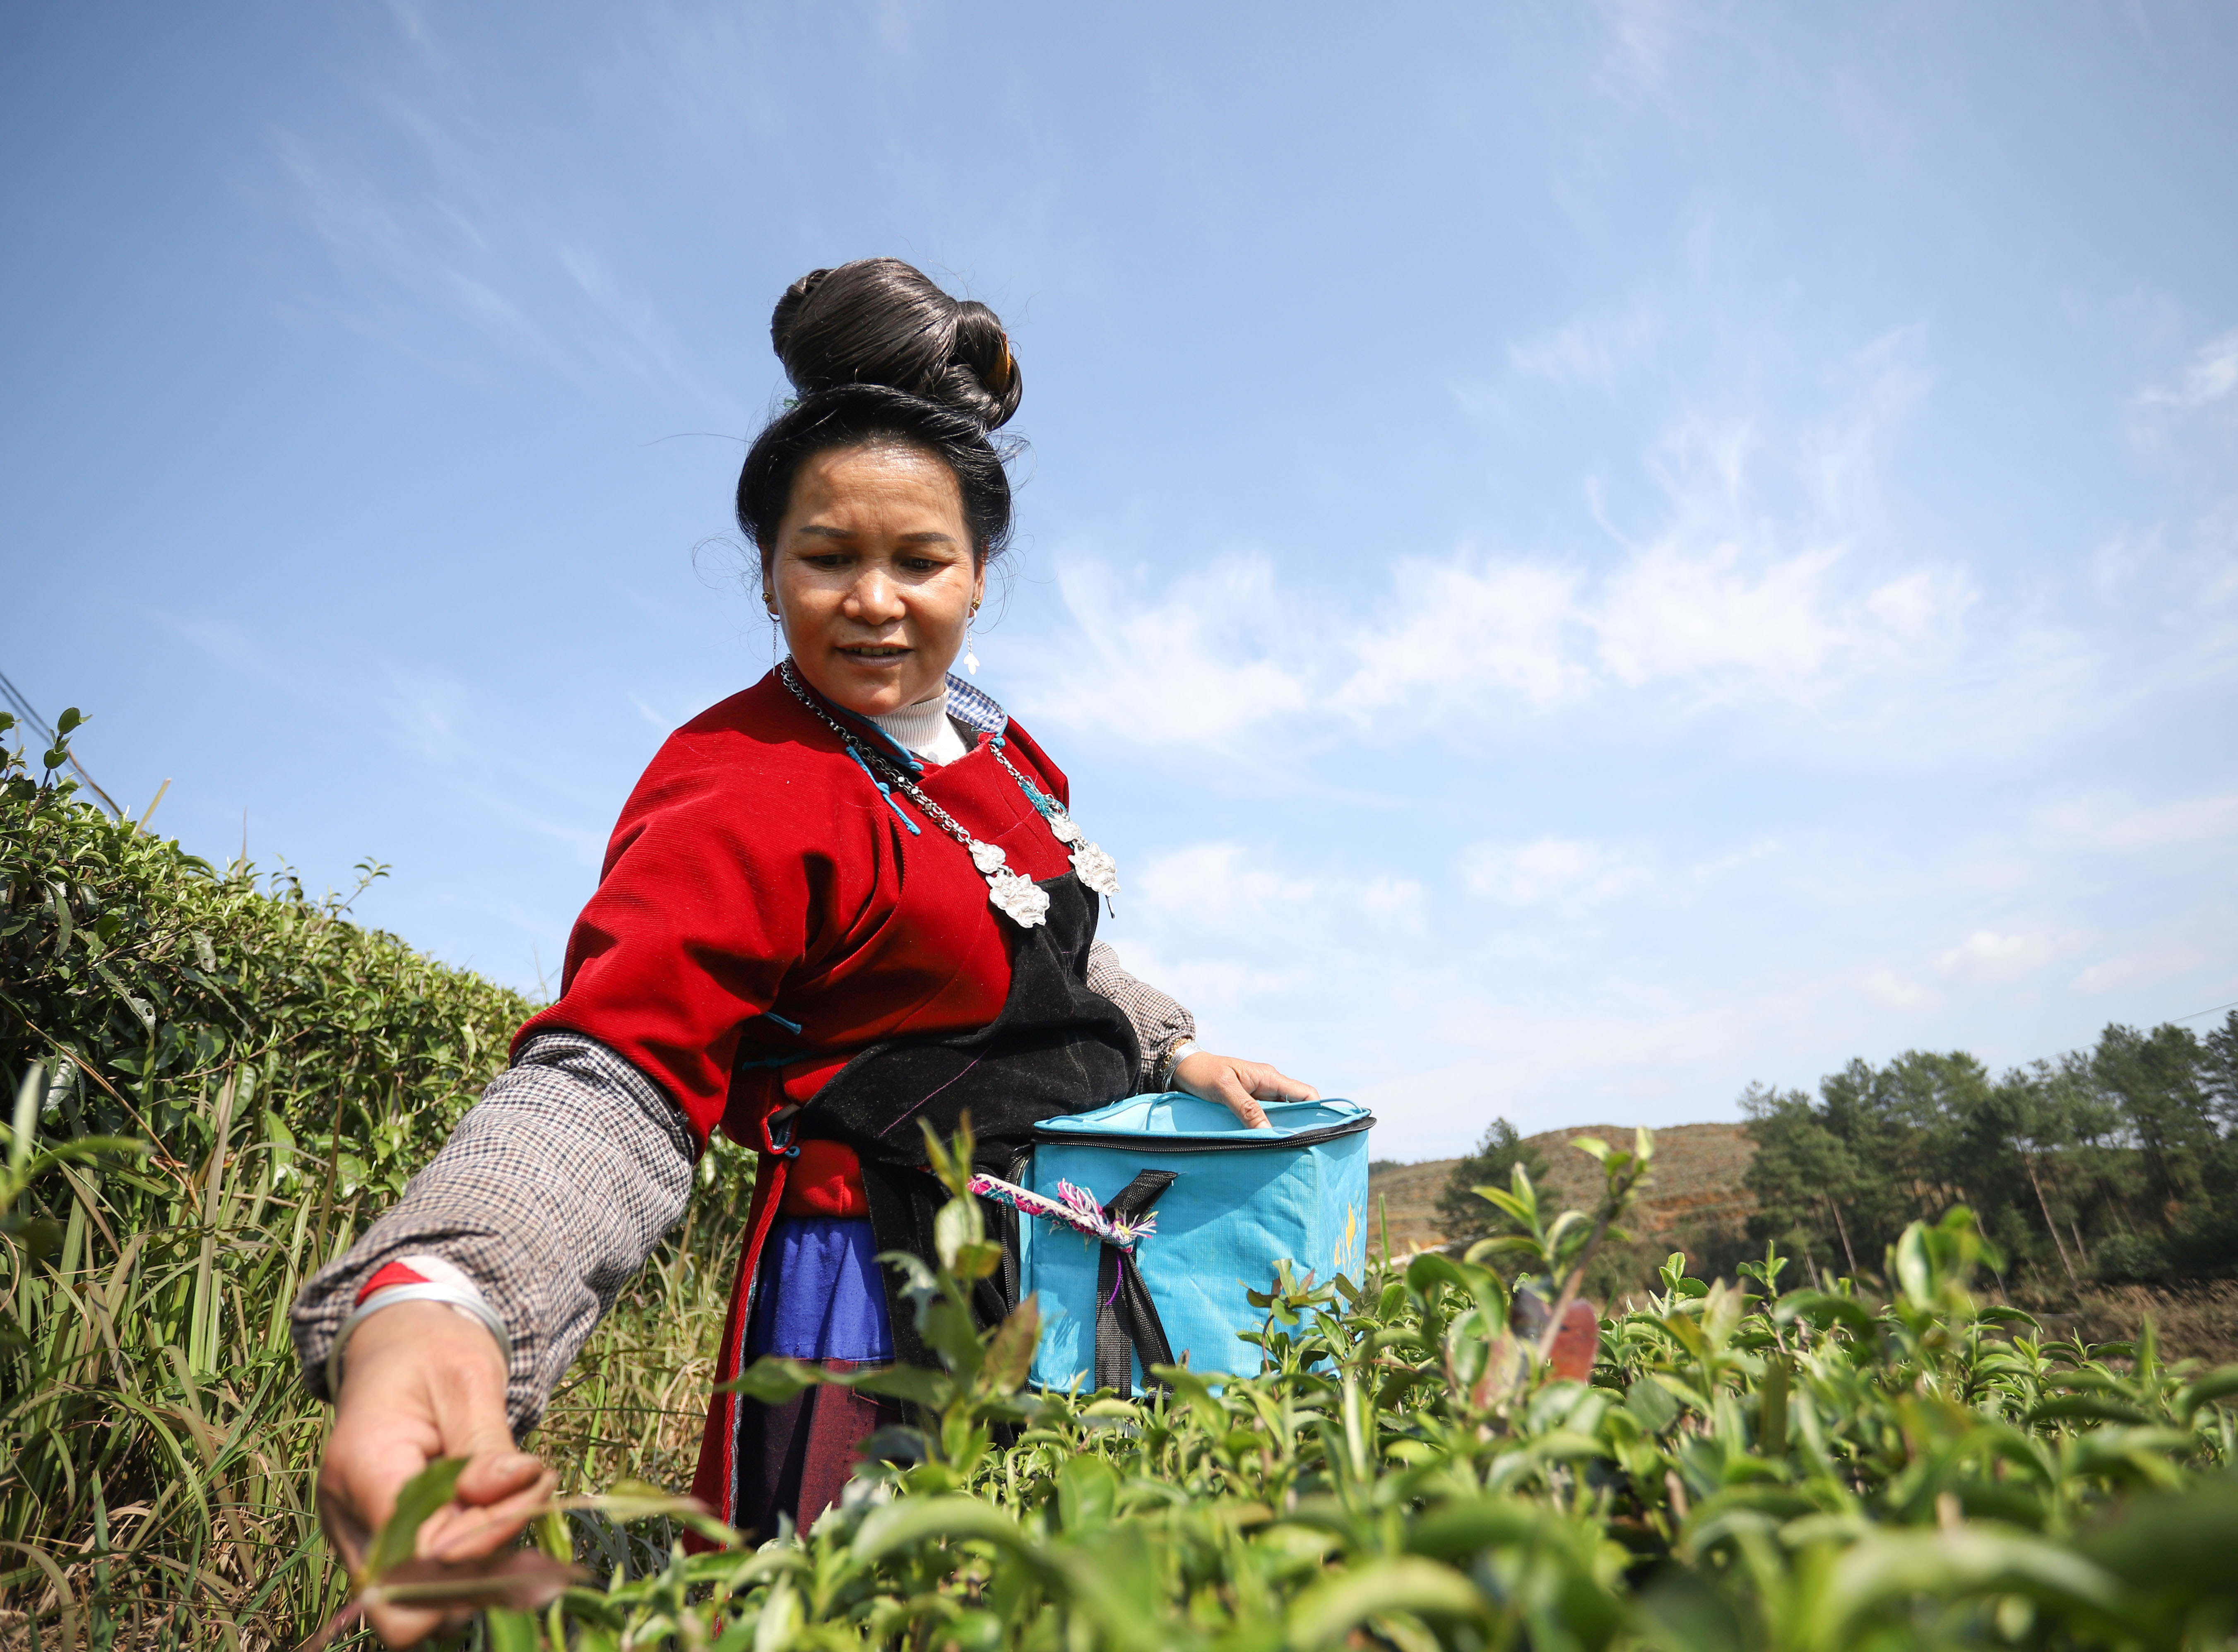 近日来,在贵州省黔东南苗族侗族自治州丹寨县的羊甲茶园,采茶工人正在